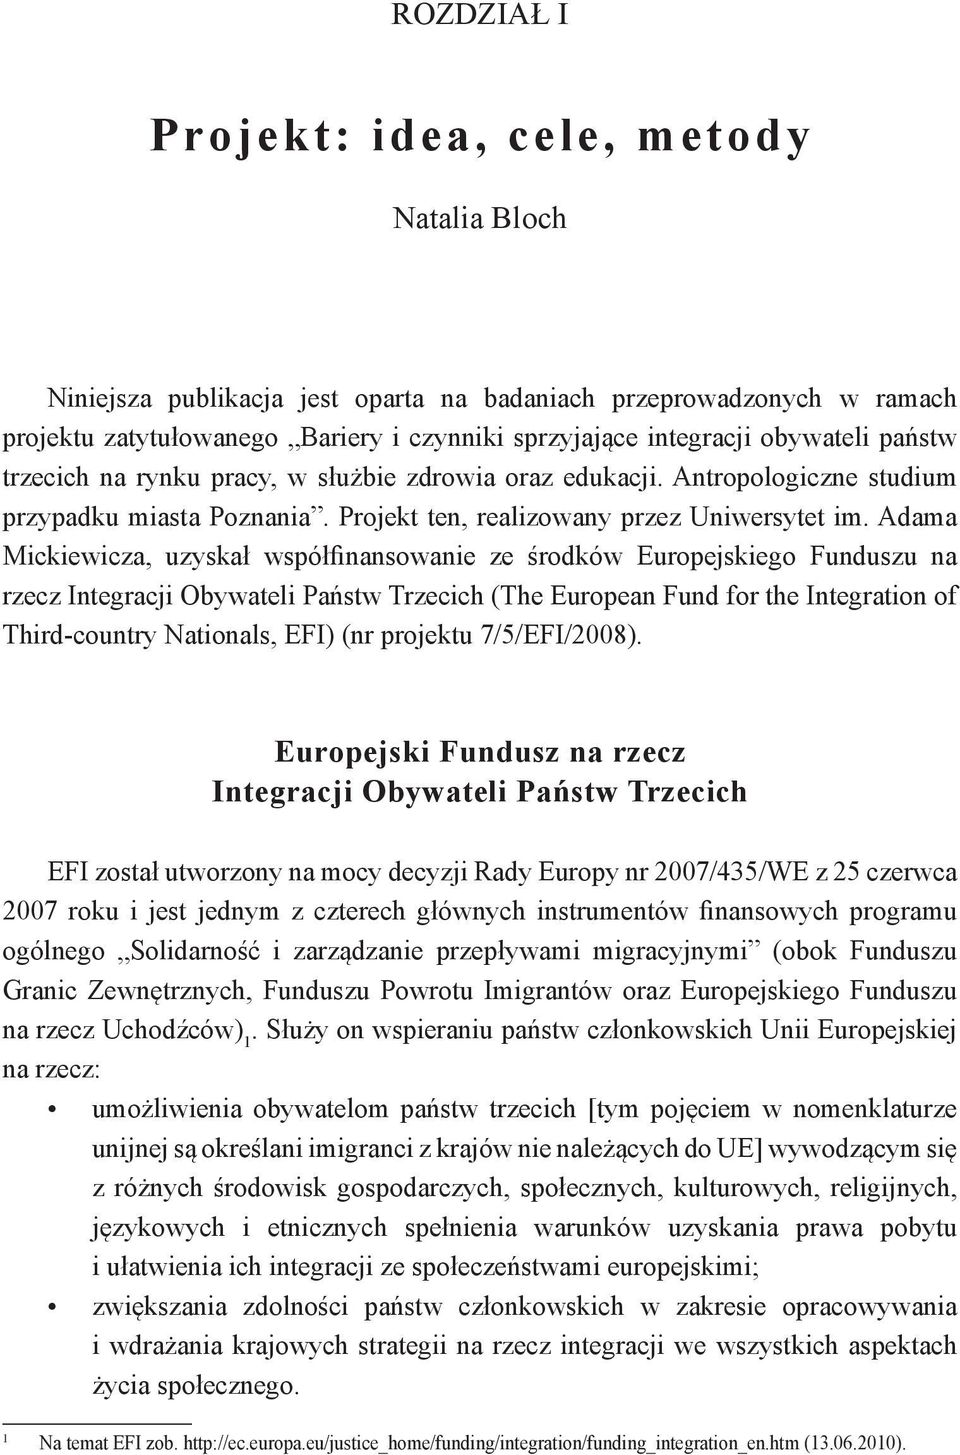 Adama Mickiewicza, uzyskał współfinansowanie ze środków Europejskiego Funduszu na rzecz Integracji Obywateli Państw Trzecich (The European Fund for the Integration of Third-country Nationals, EFI)